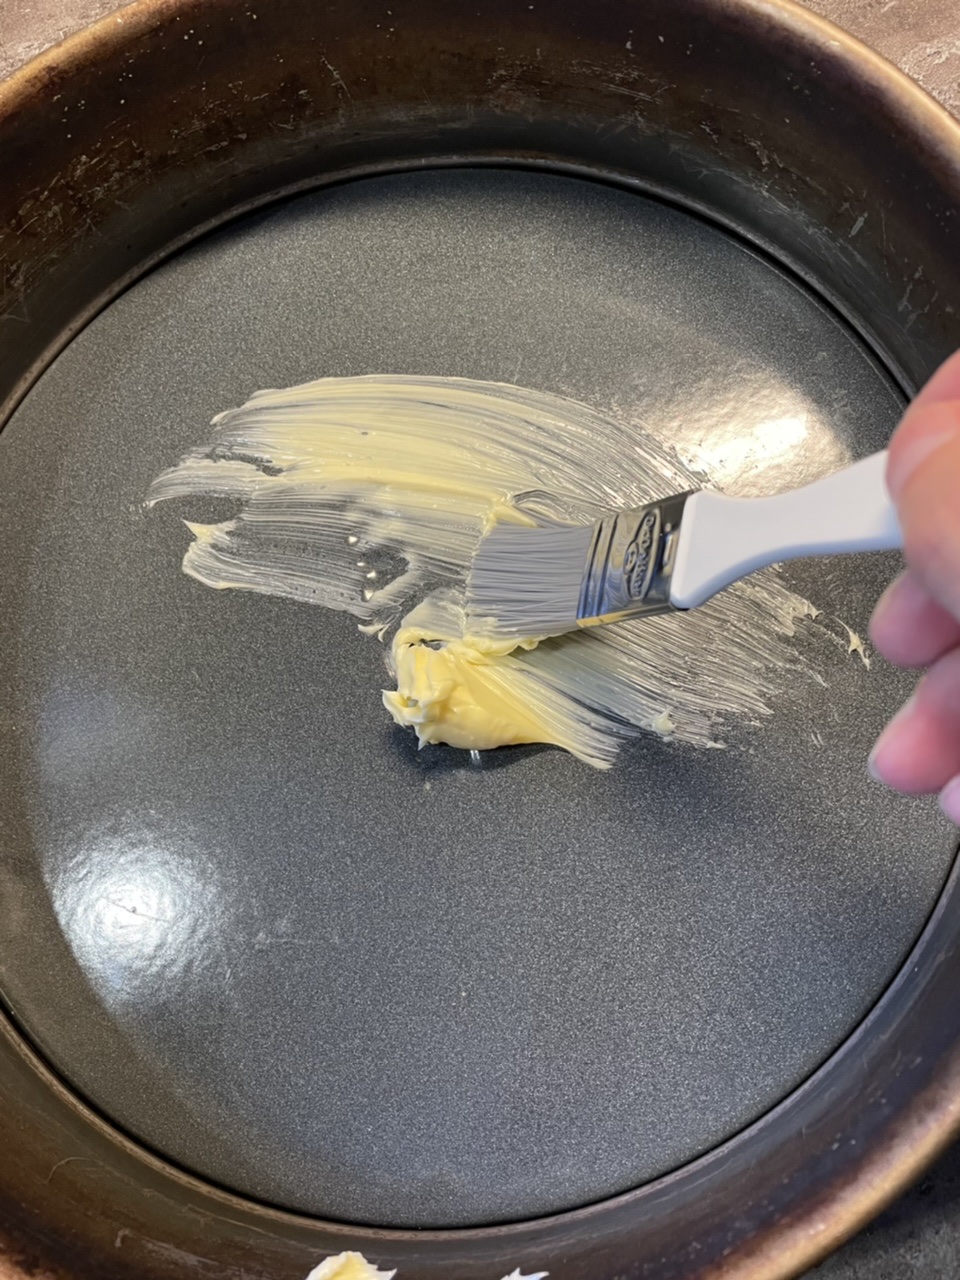 Bild zum Schritt 4 für das Bastel- und DIY-Abenteuer für Kinder: 'Verteilt anschließend einen Esslöffel Margarine mit dem Pinsel am Boden...'